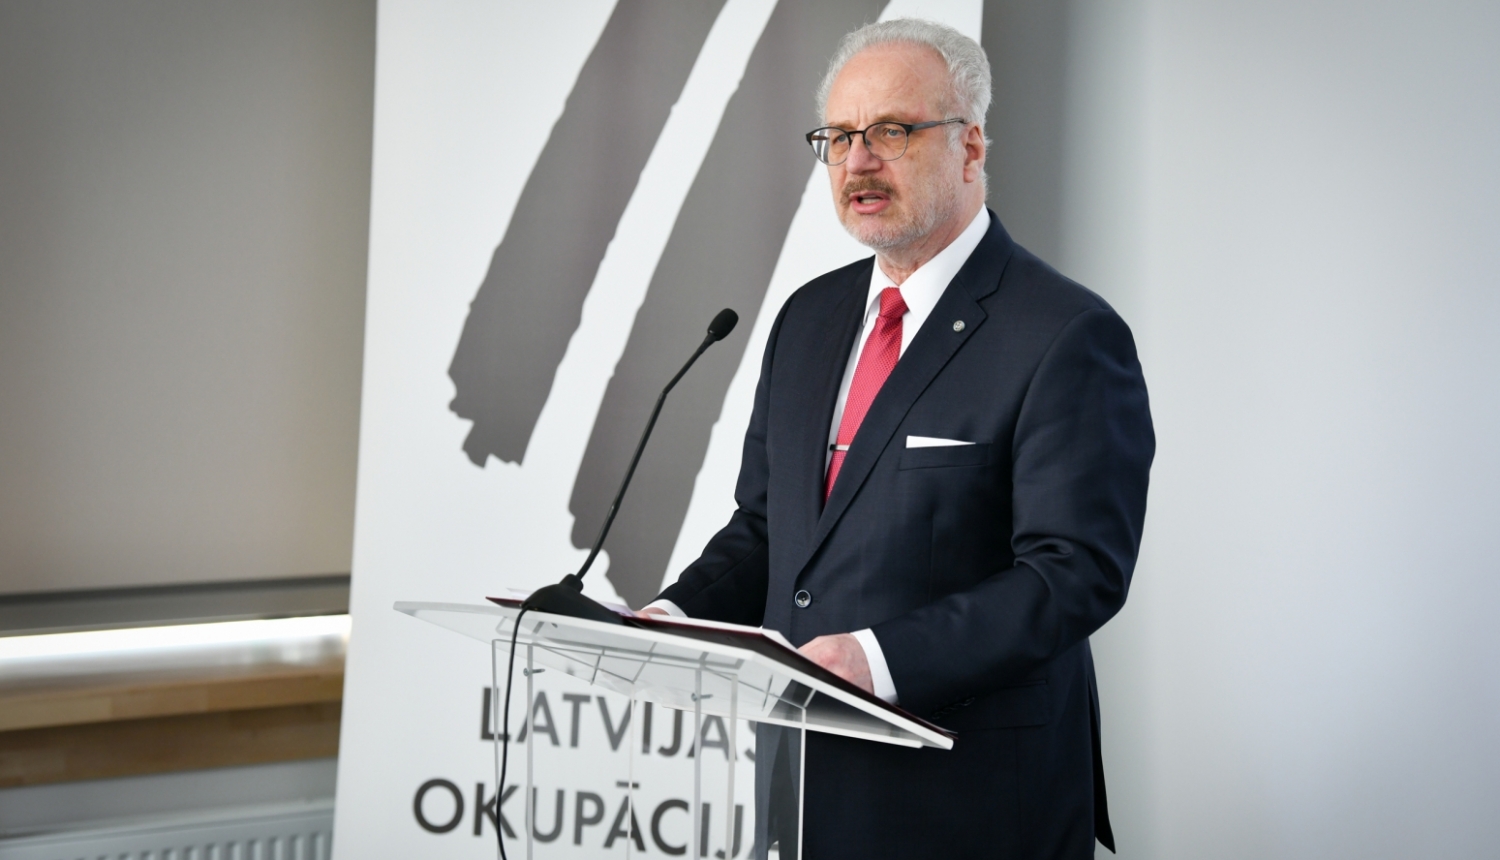 Valsts prezidenta Egila Levita runa Latvijas Okupācijas muzeja jaunās ekspozīcijas svinīgajā atklāšanā